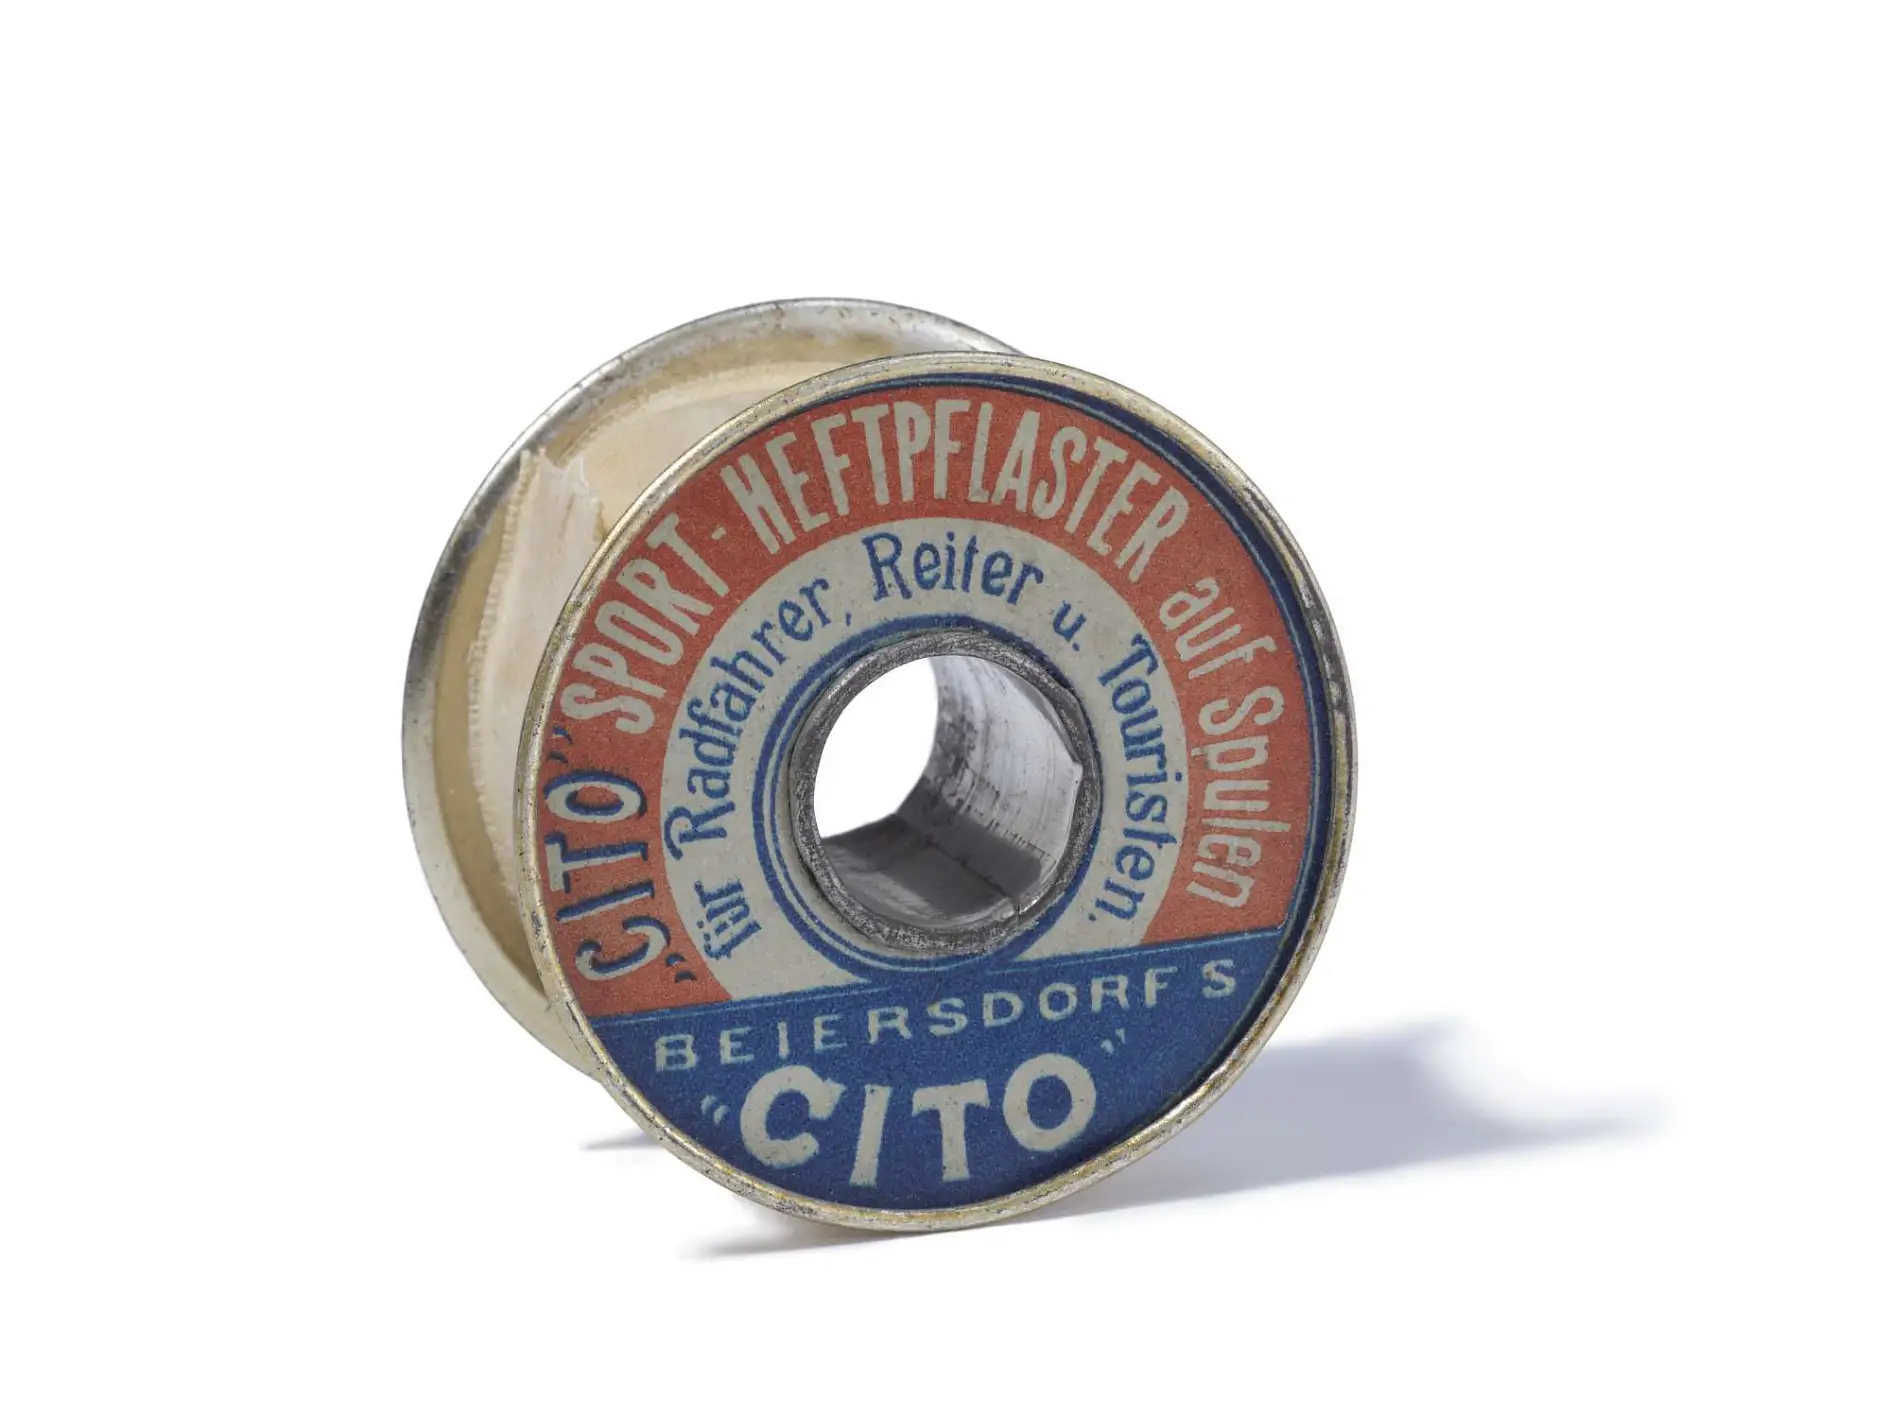 Üretimine 1896 yılında başlanan Cito yapışkan sporcu bandı, dünyanın ilk teknik yapışkan bandıdır.